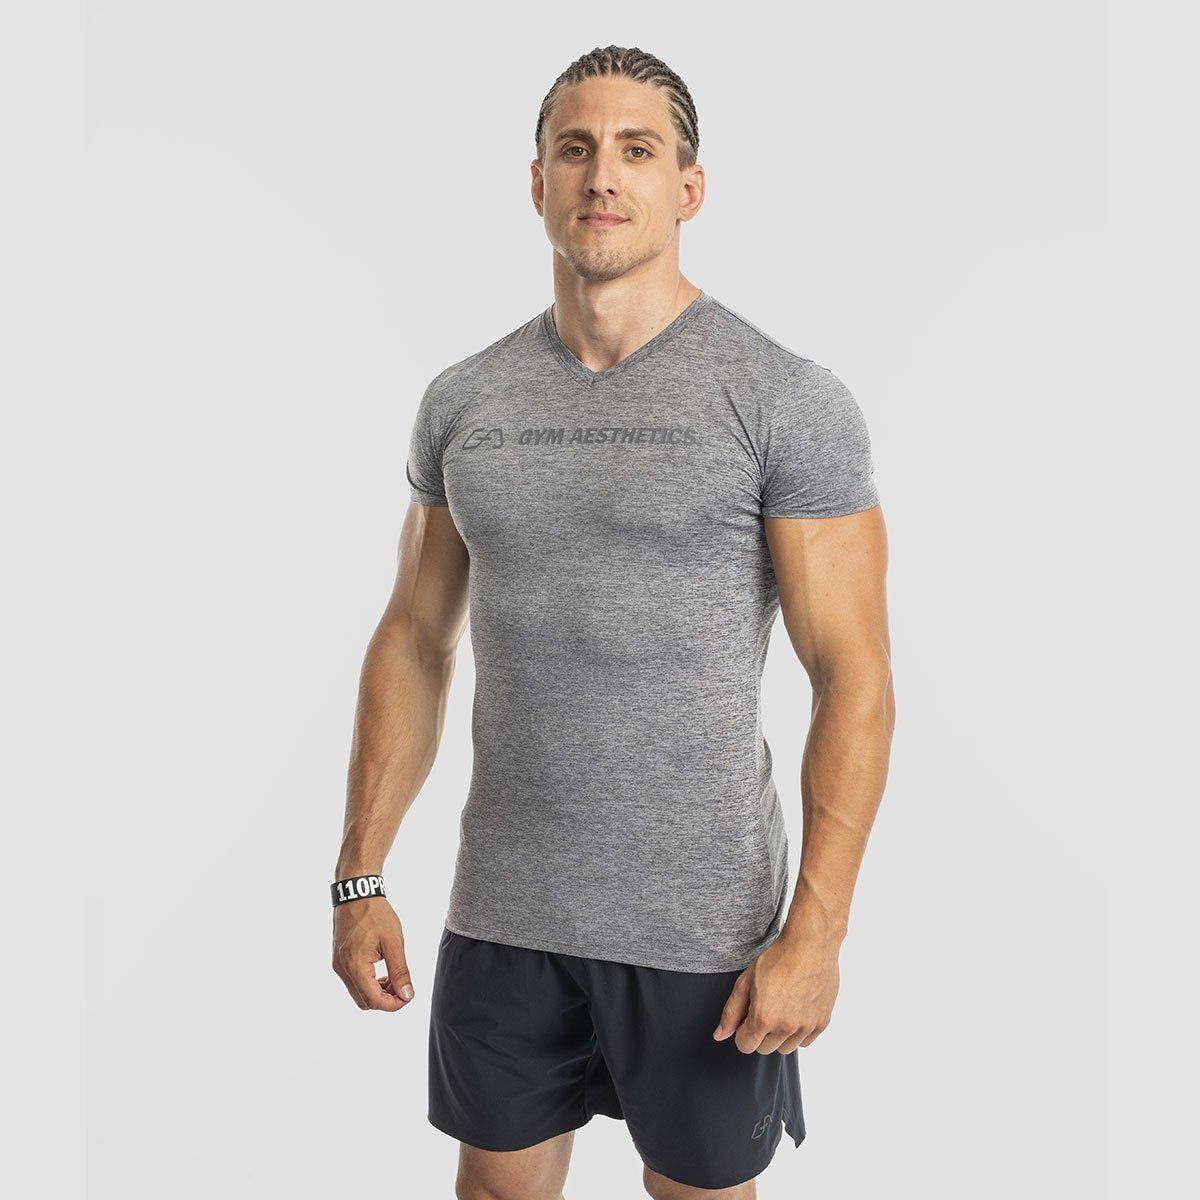 GYM AESTHETICS Atmungaktiv Herren V-Neck T-Shirt Holzkohle Tight-Fit V-Ausschnitt, Melange UV-Schutz, Funktionsshirt Intensity Stretch, für